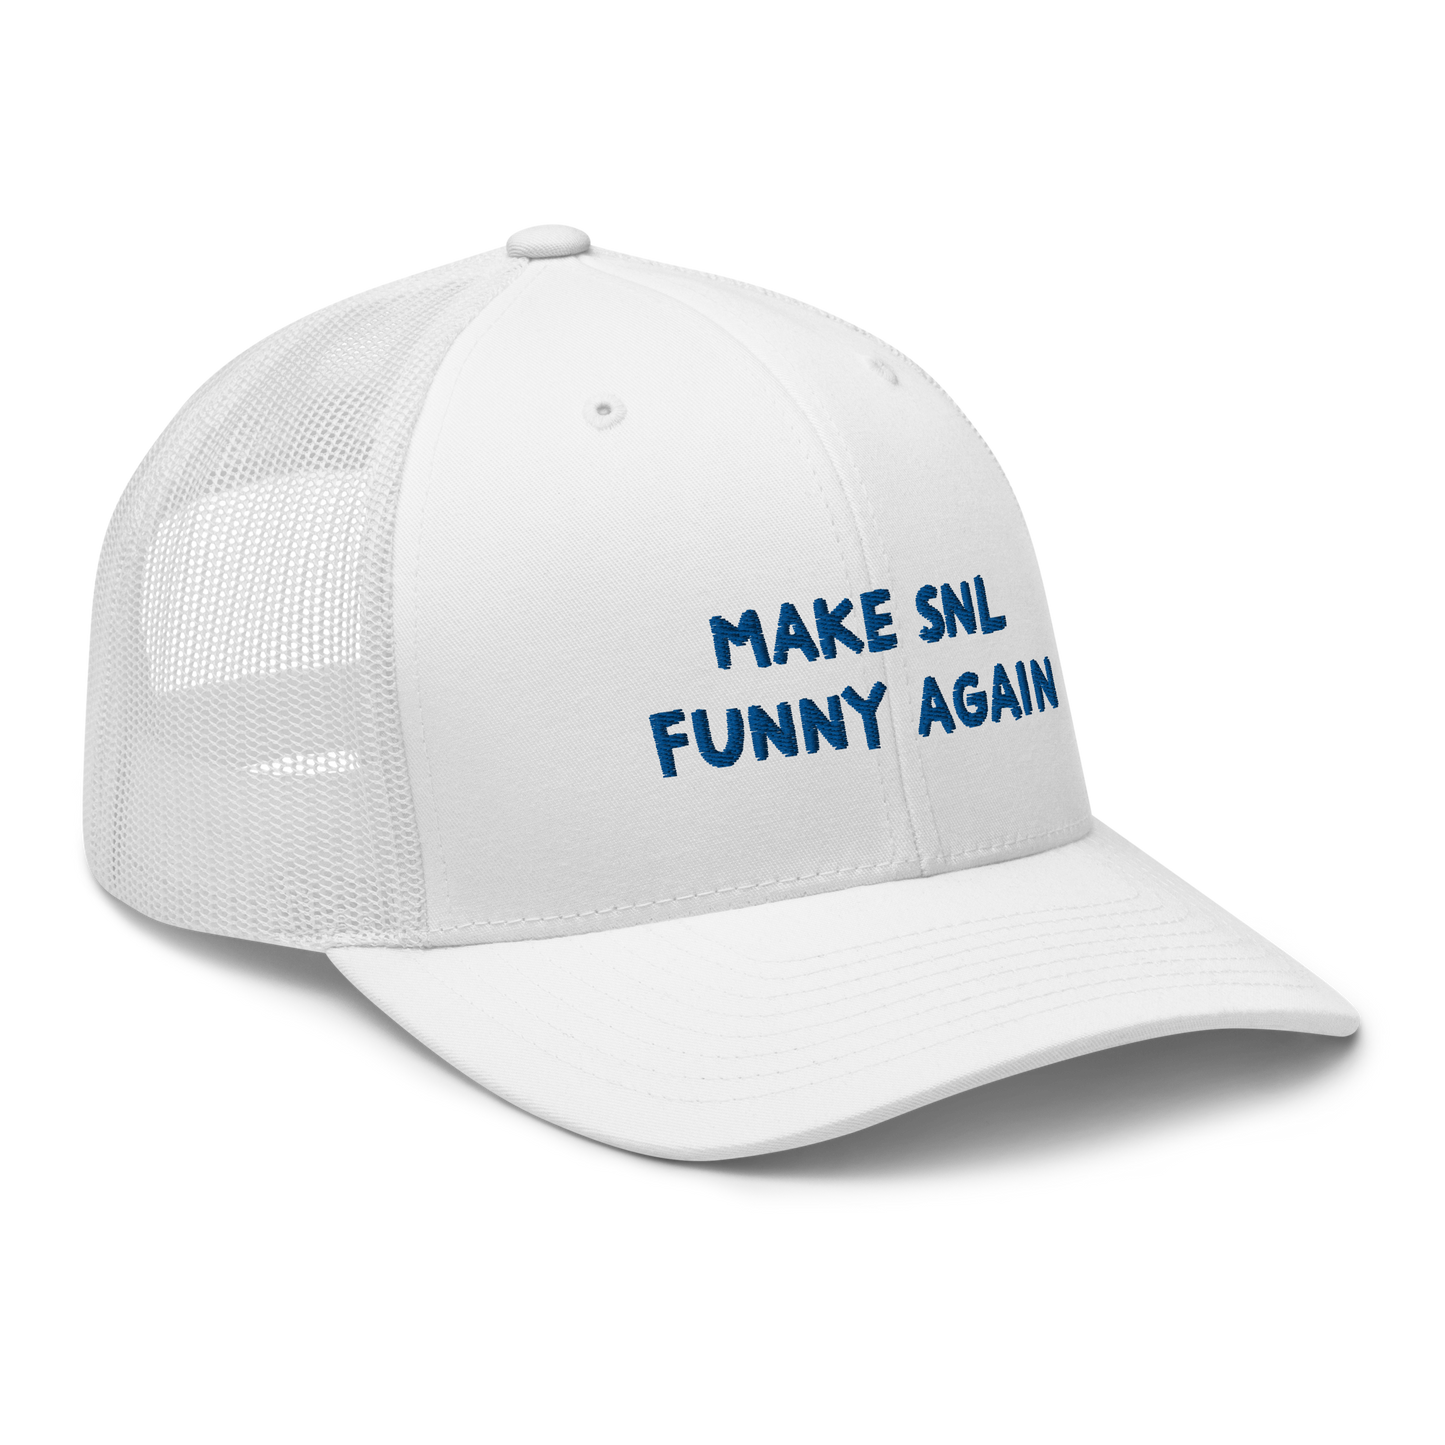 Make SNL Funny Again trucker hat